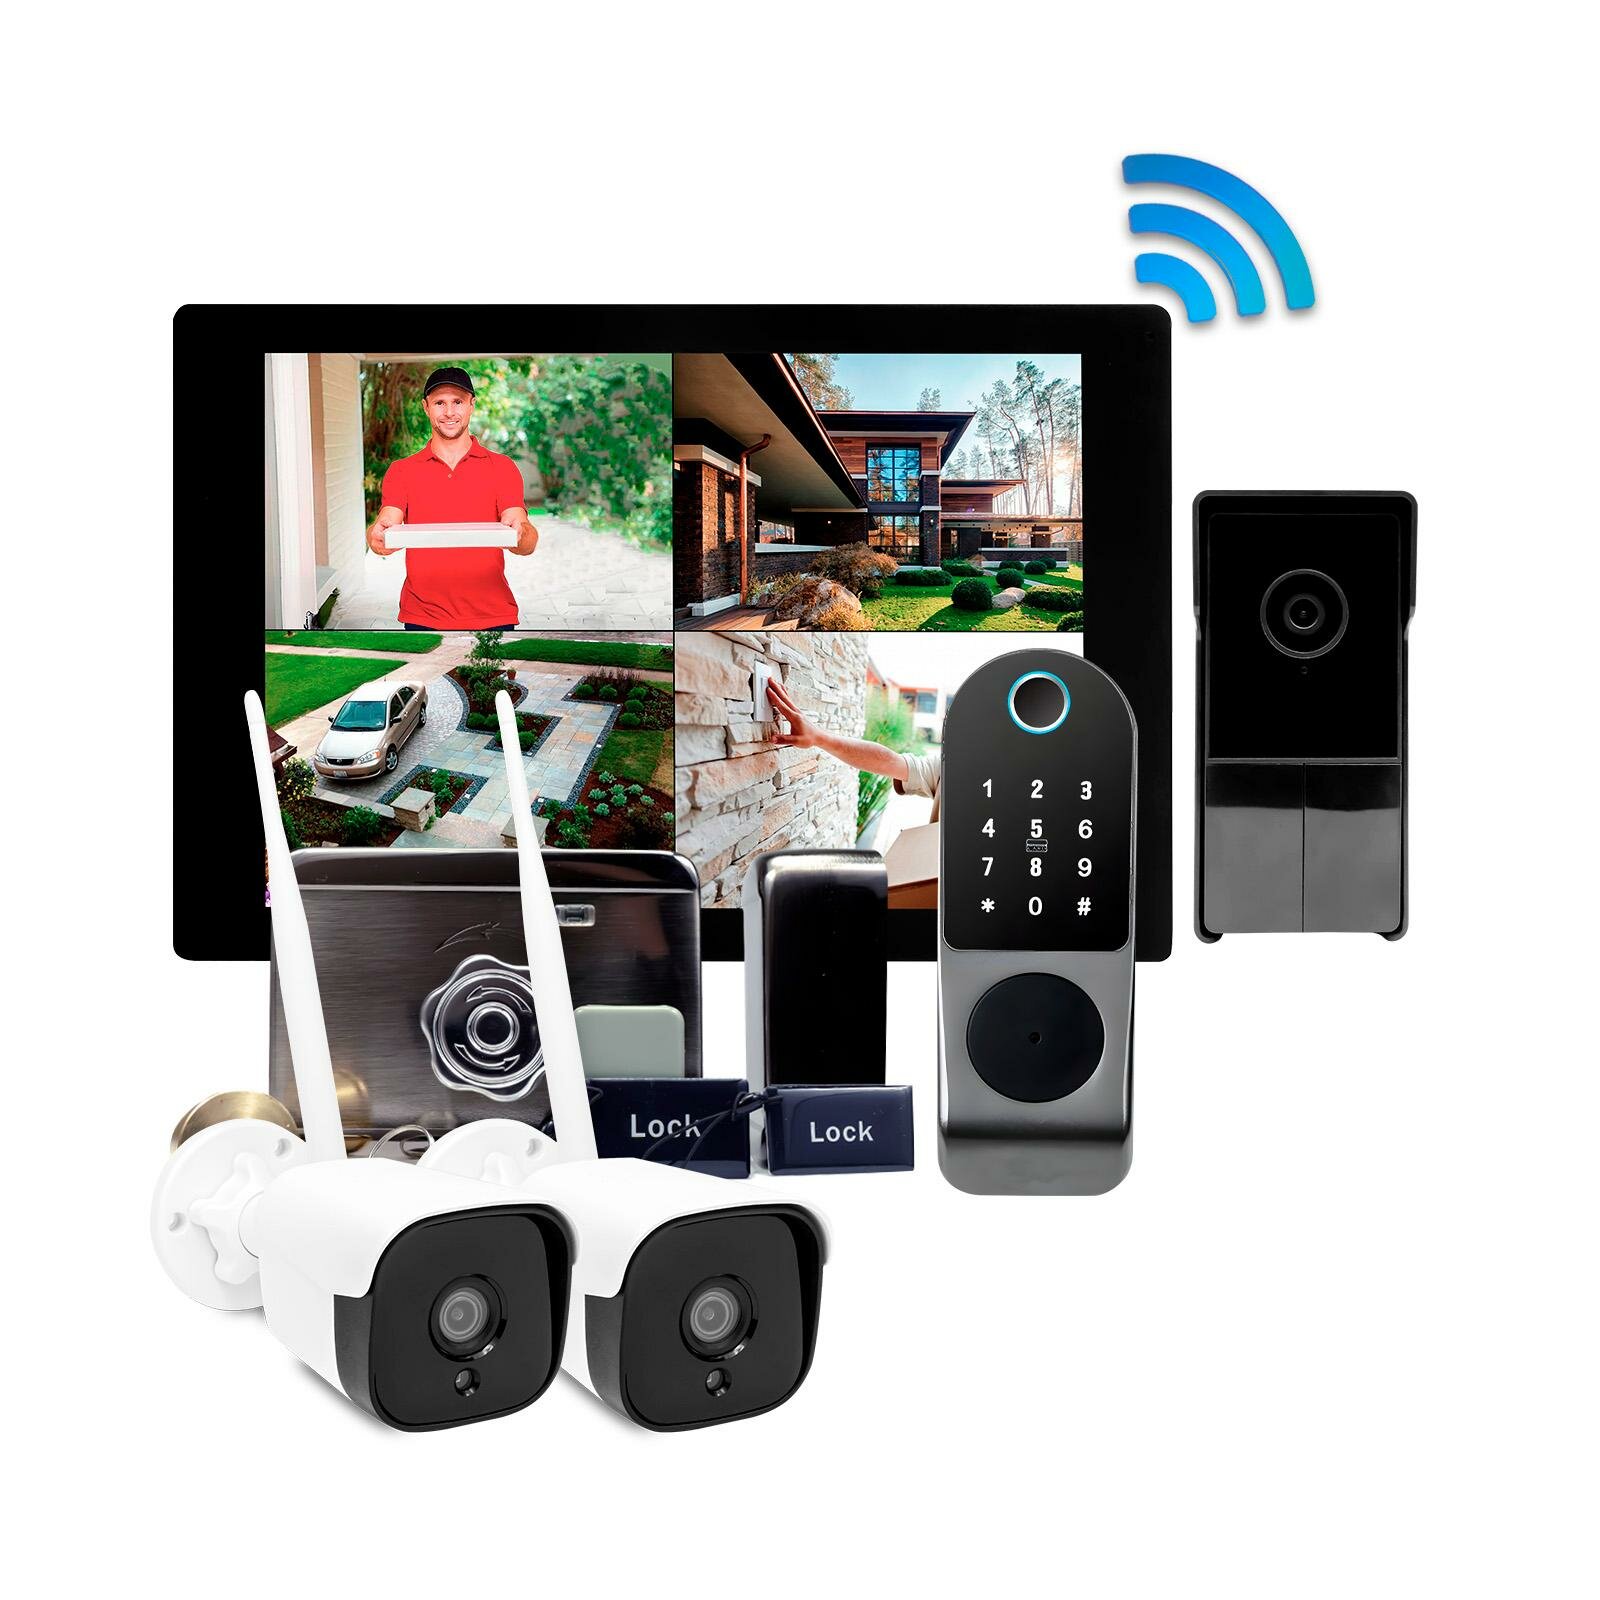 Цветной Wi-Fi домофон TUYA с 2 камерами и замком - СкайНет 1000 (1+2+SL-812) (N50128RA): HD экран 10 дюймов, вызывная видеопанель, биометрический замо